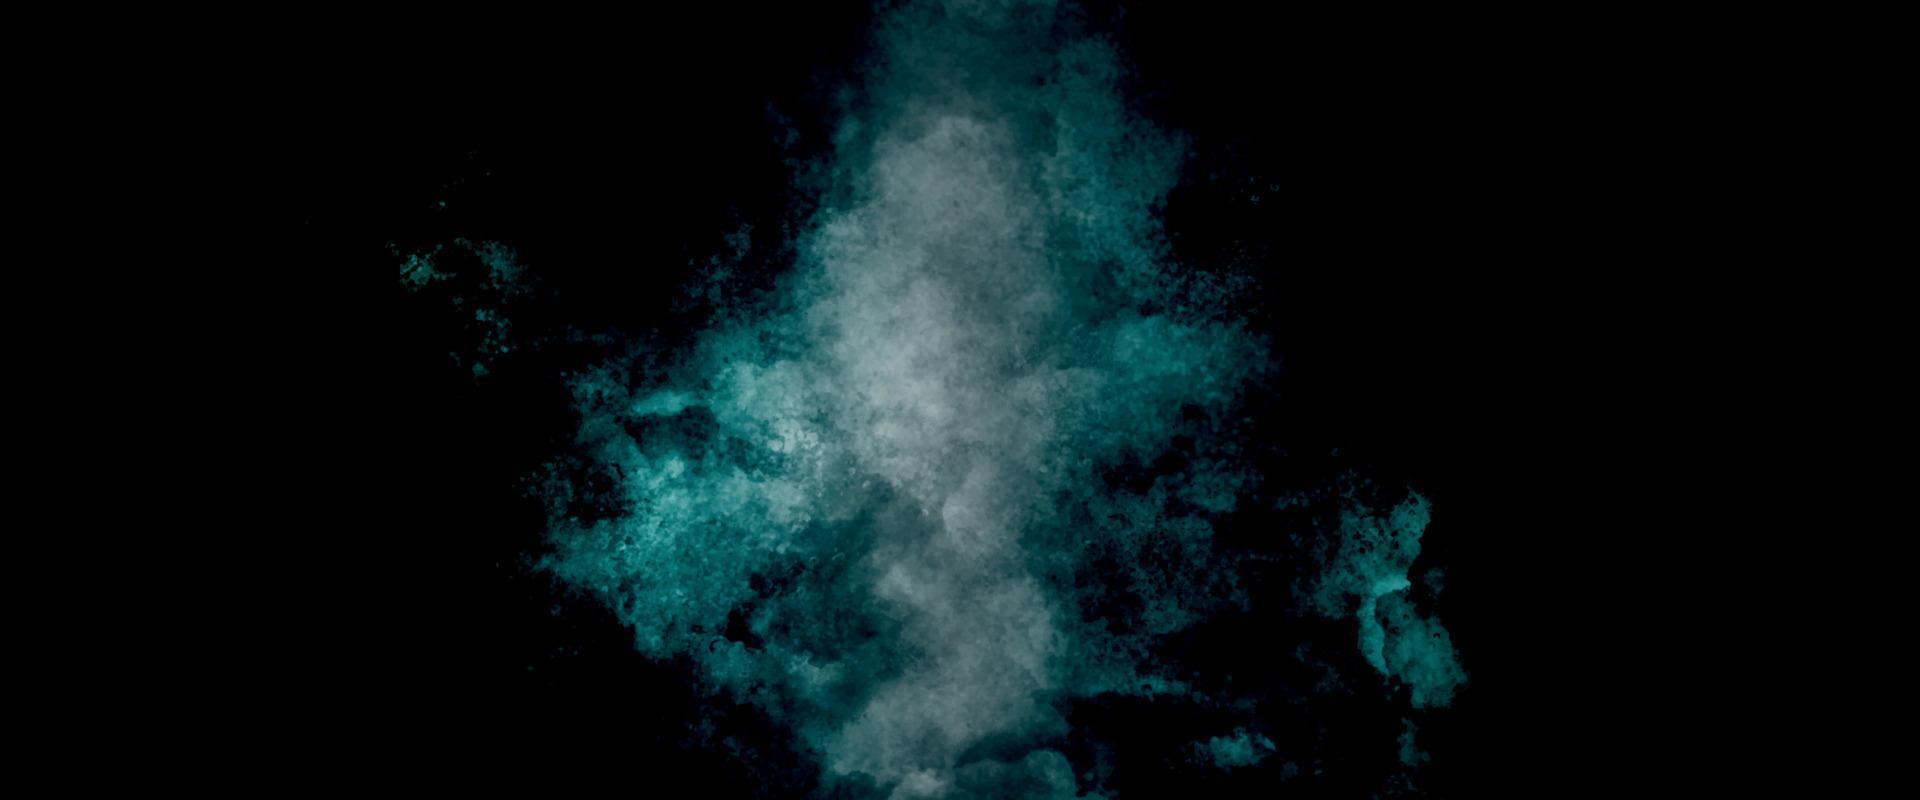 bakgrund med moln. gammal årgång blå grön bakgrund med bedrövad textur och grunge design med svart gräns. kosmisk neon polär lampor vattenfärg bakgrund vektor